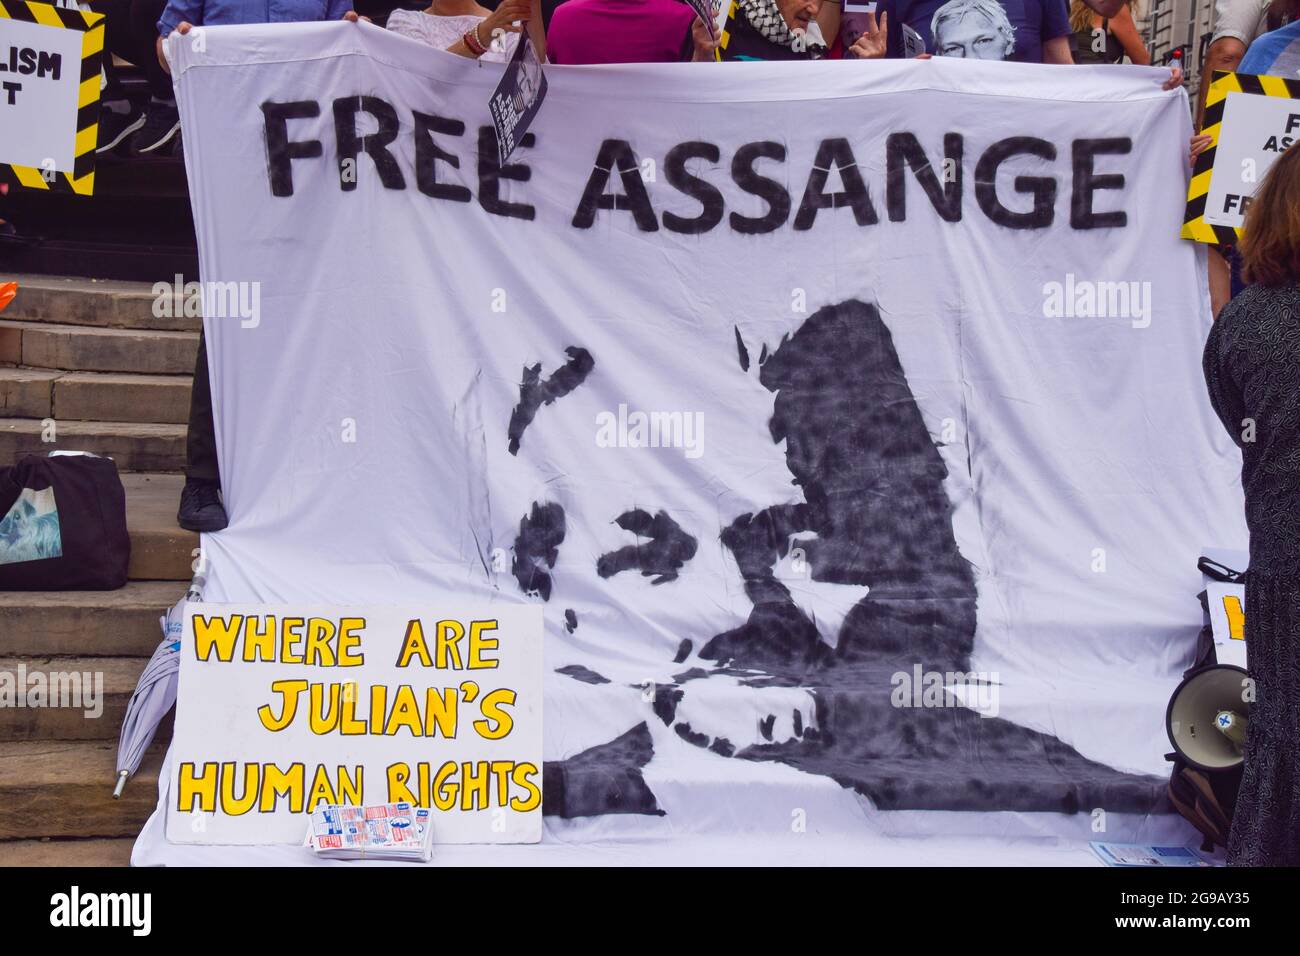 Londres, Royaume-Uni. 24 juillet 2021. Les manifestants tiennent une bannière « Free Assange » lors de la manifestation pro-Julian Assange. Les manifestants se sont rassemblés à Piccadilly Circus pour réclamer la libération du fondateur de WikiLeaks. Crédit : SOPA Images Limited/Alamy Live News Banque D'Images